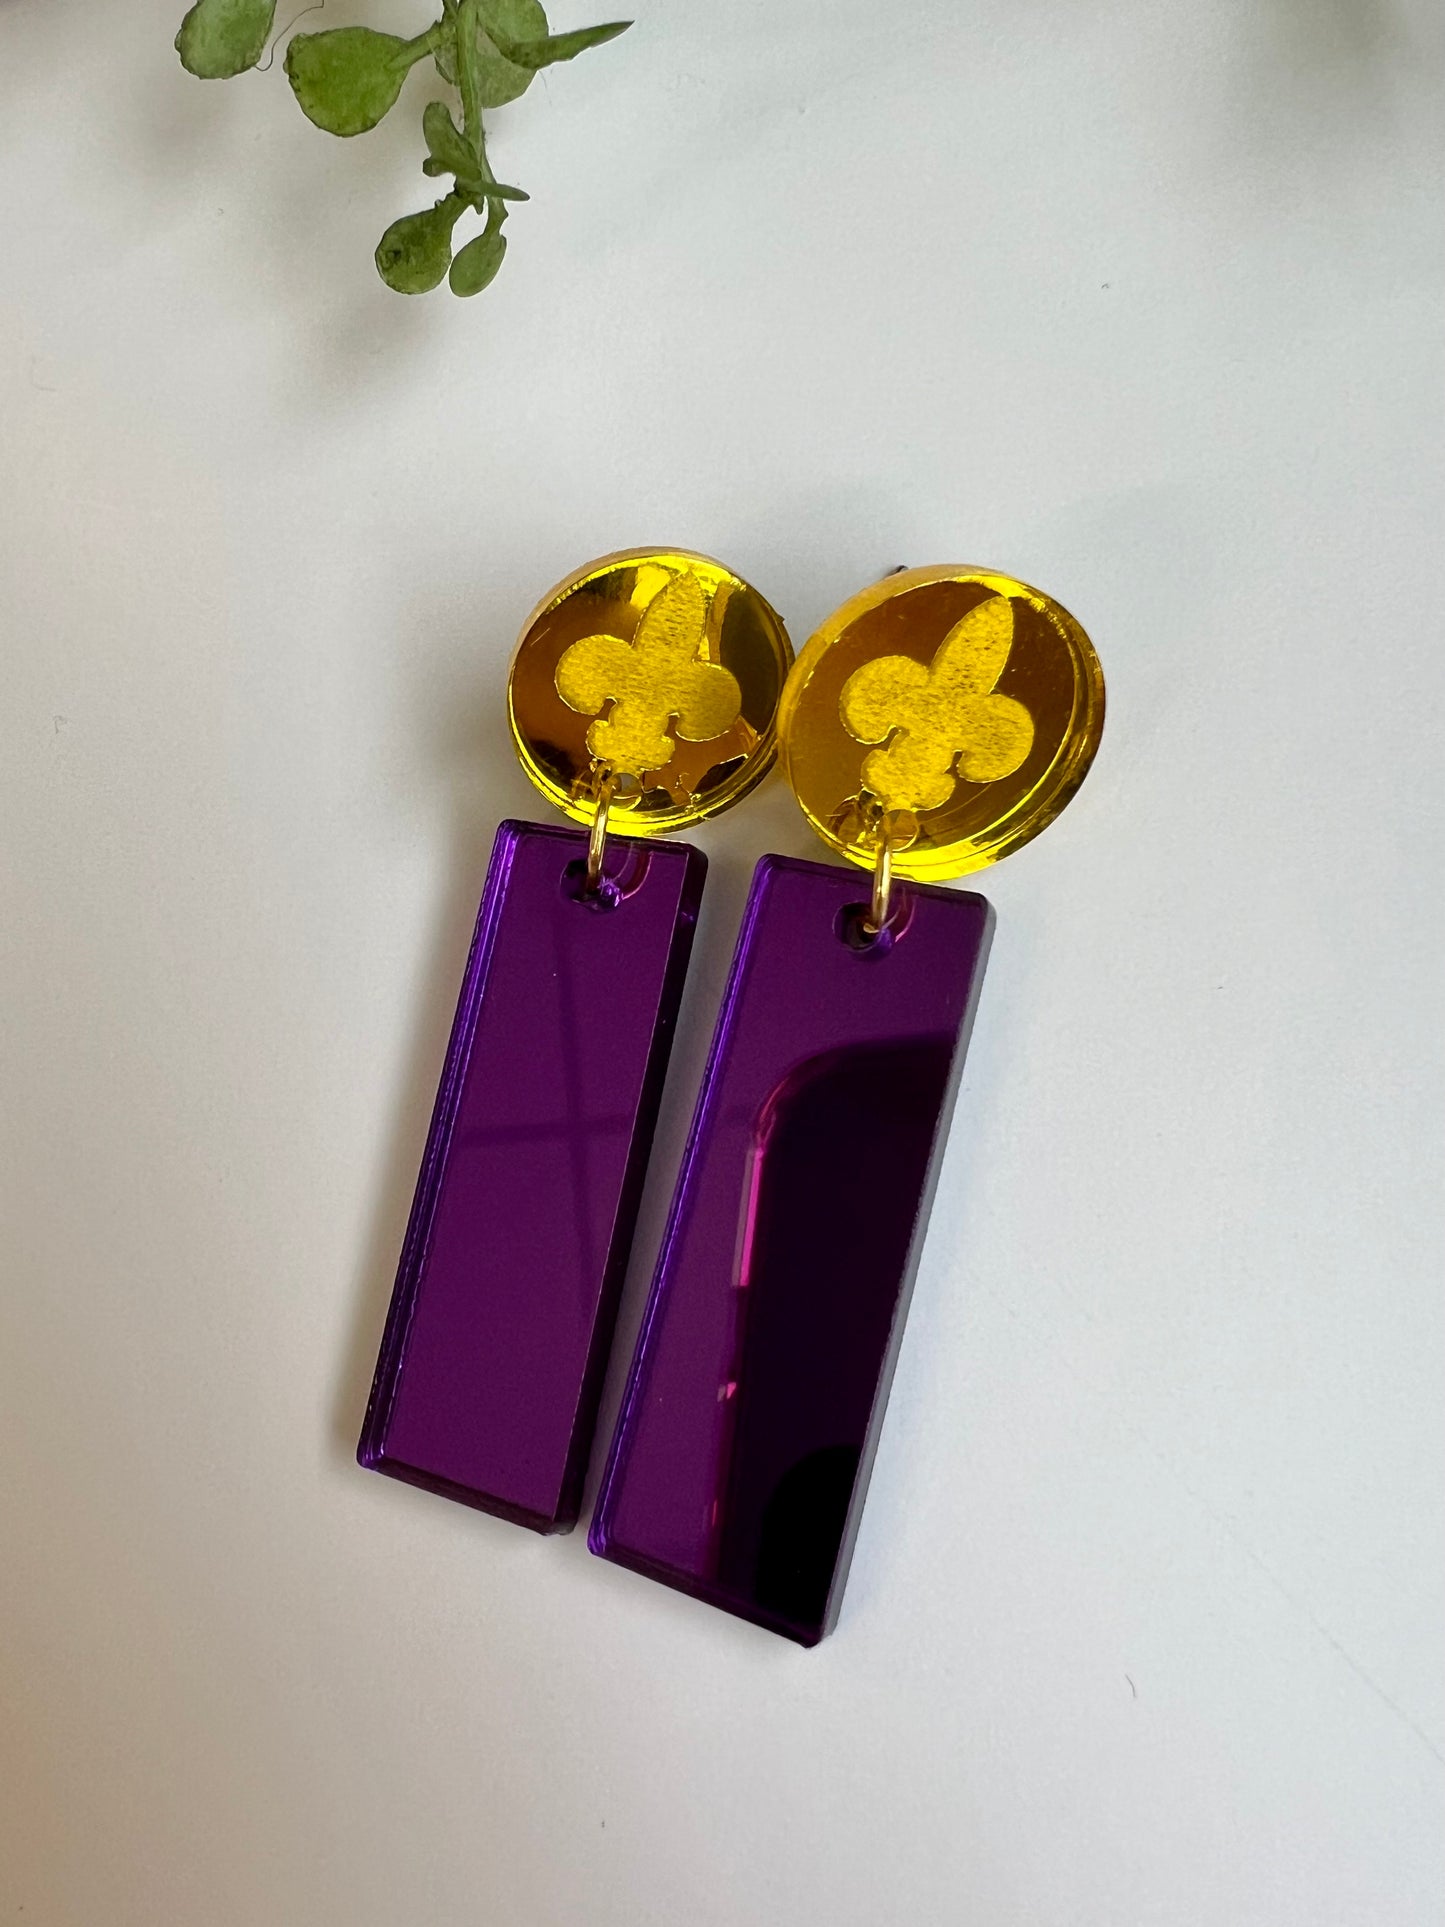 Fleur-de-lis mirror dangle earrings. Gold top.